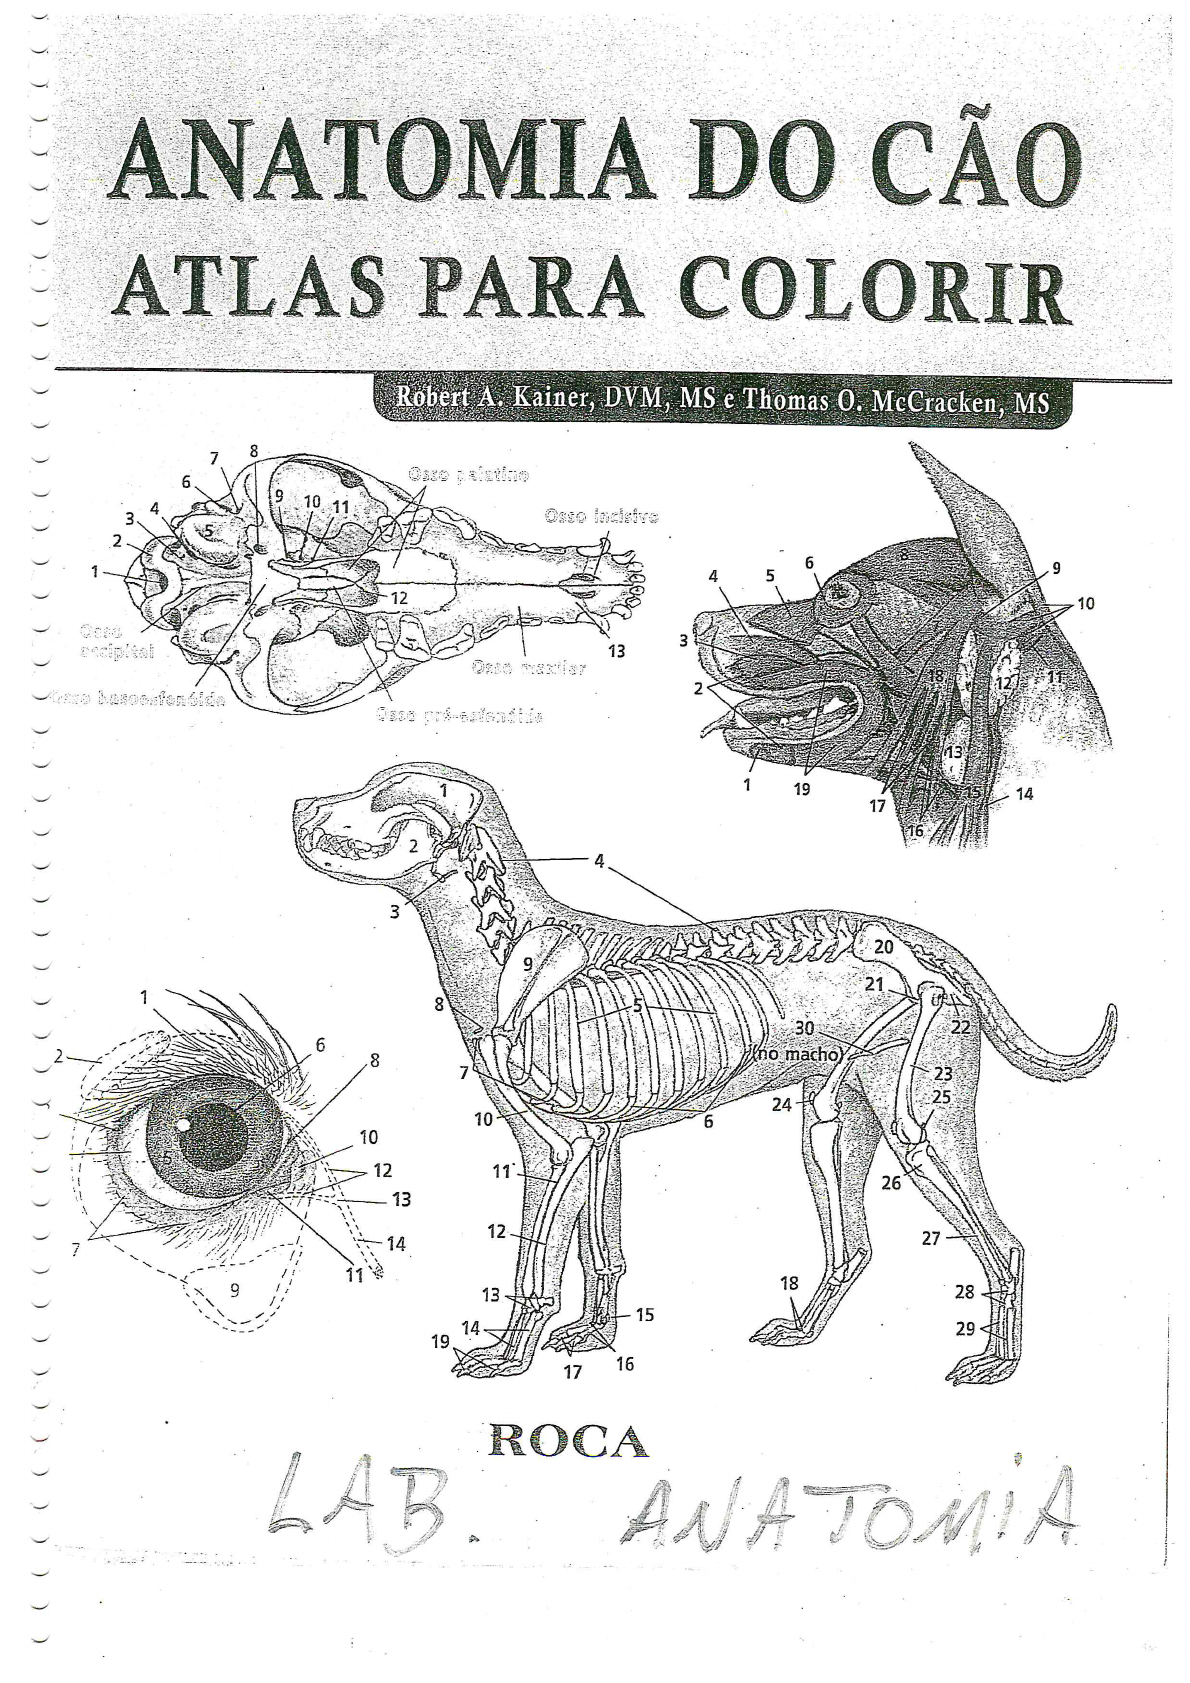 4 Anatomia Do Cão Atlas Para Colorir Anatomia Veterinária I 3982